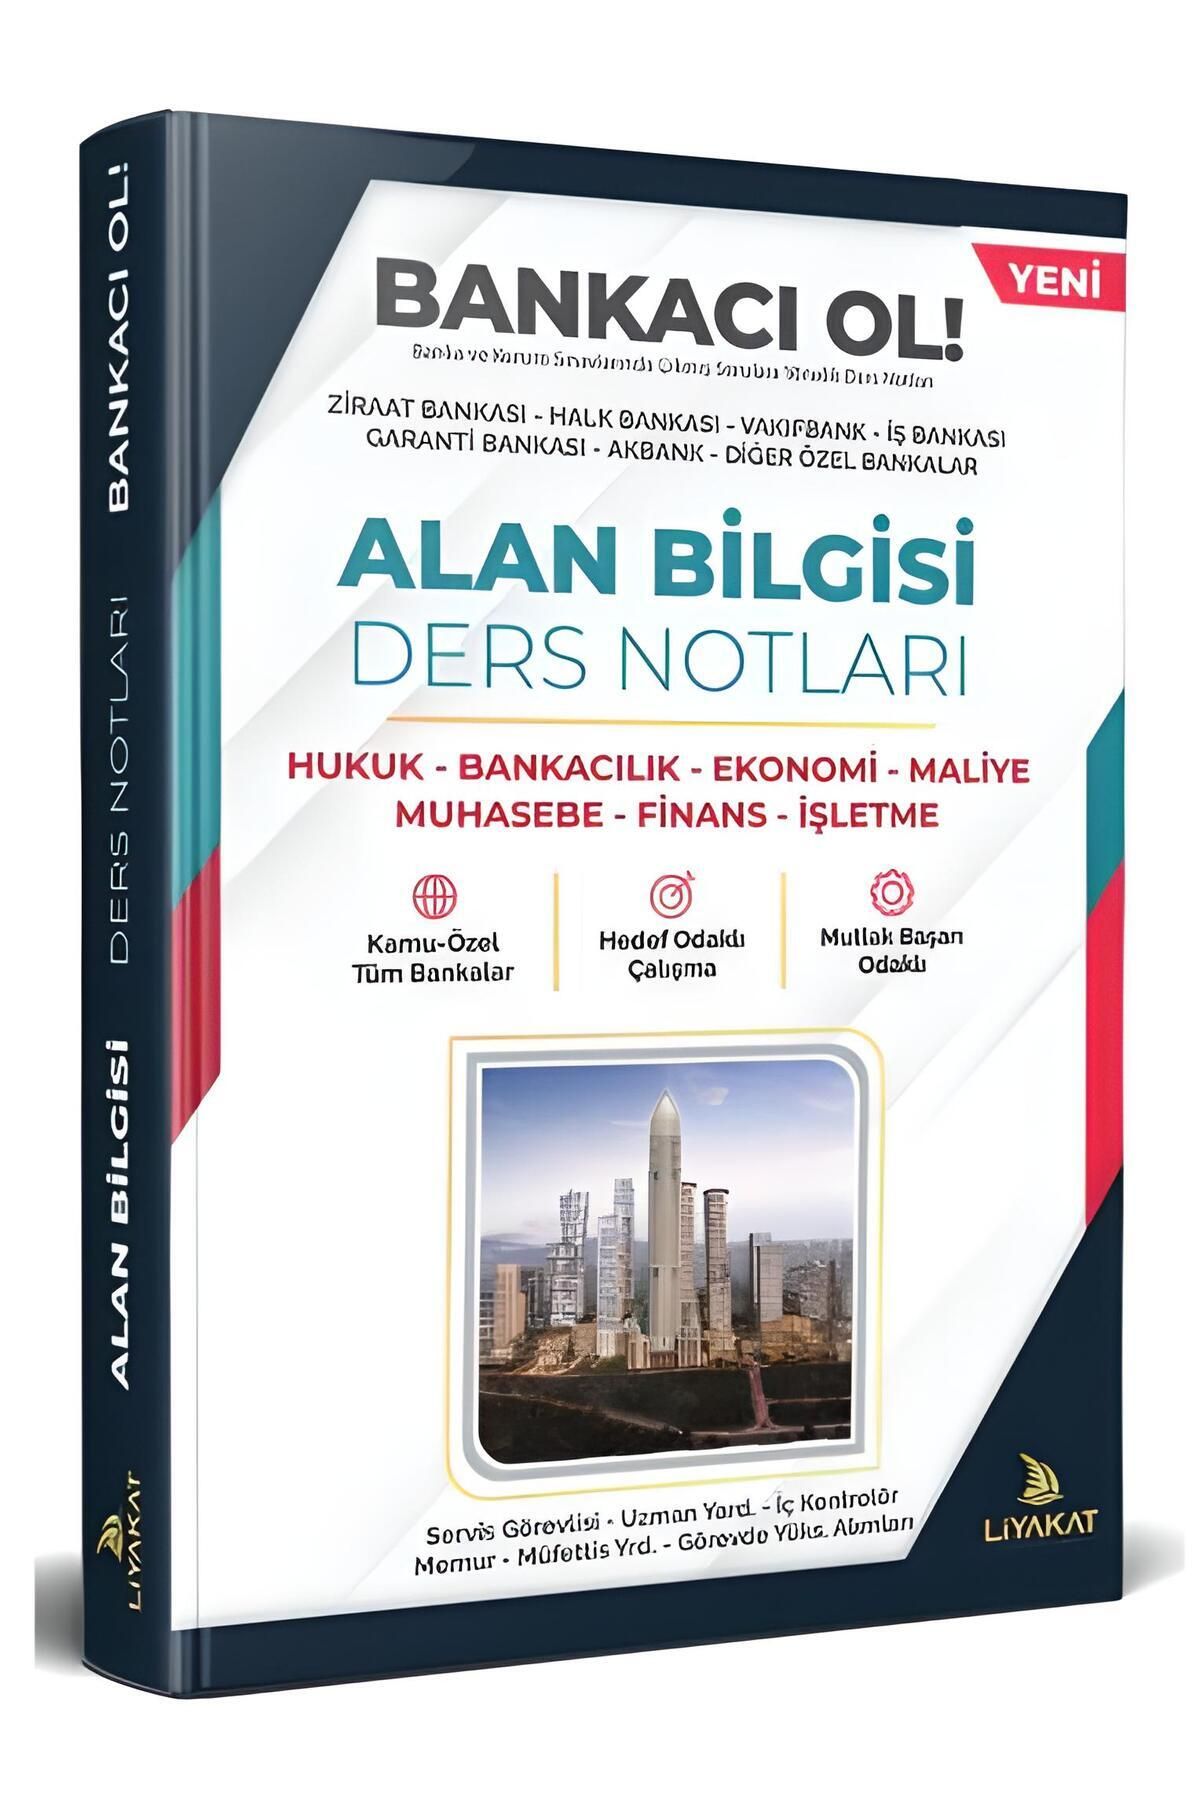 Liyakat Yayınları GÜNCEL BANKACI OL - BANKA SINAVLARI ÖZEL DERS NOTLARI (ALAN BİLGİSİ), 490 SAYFA